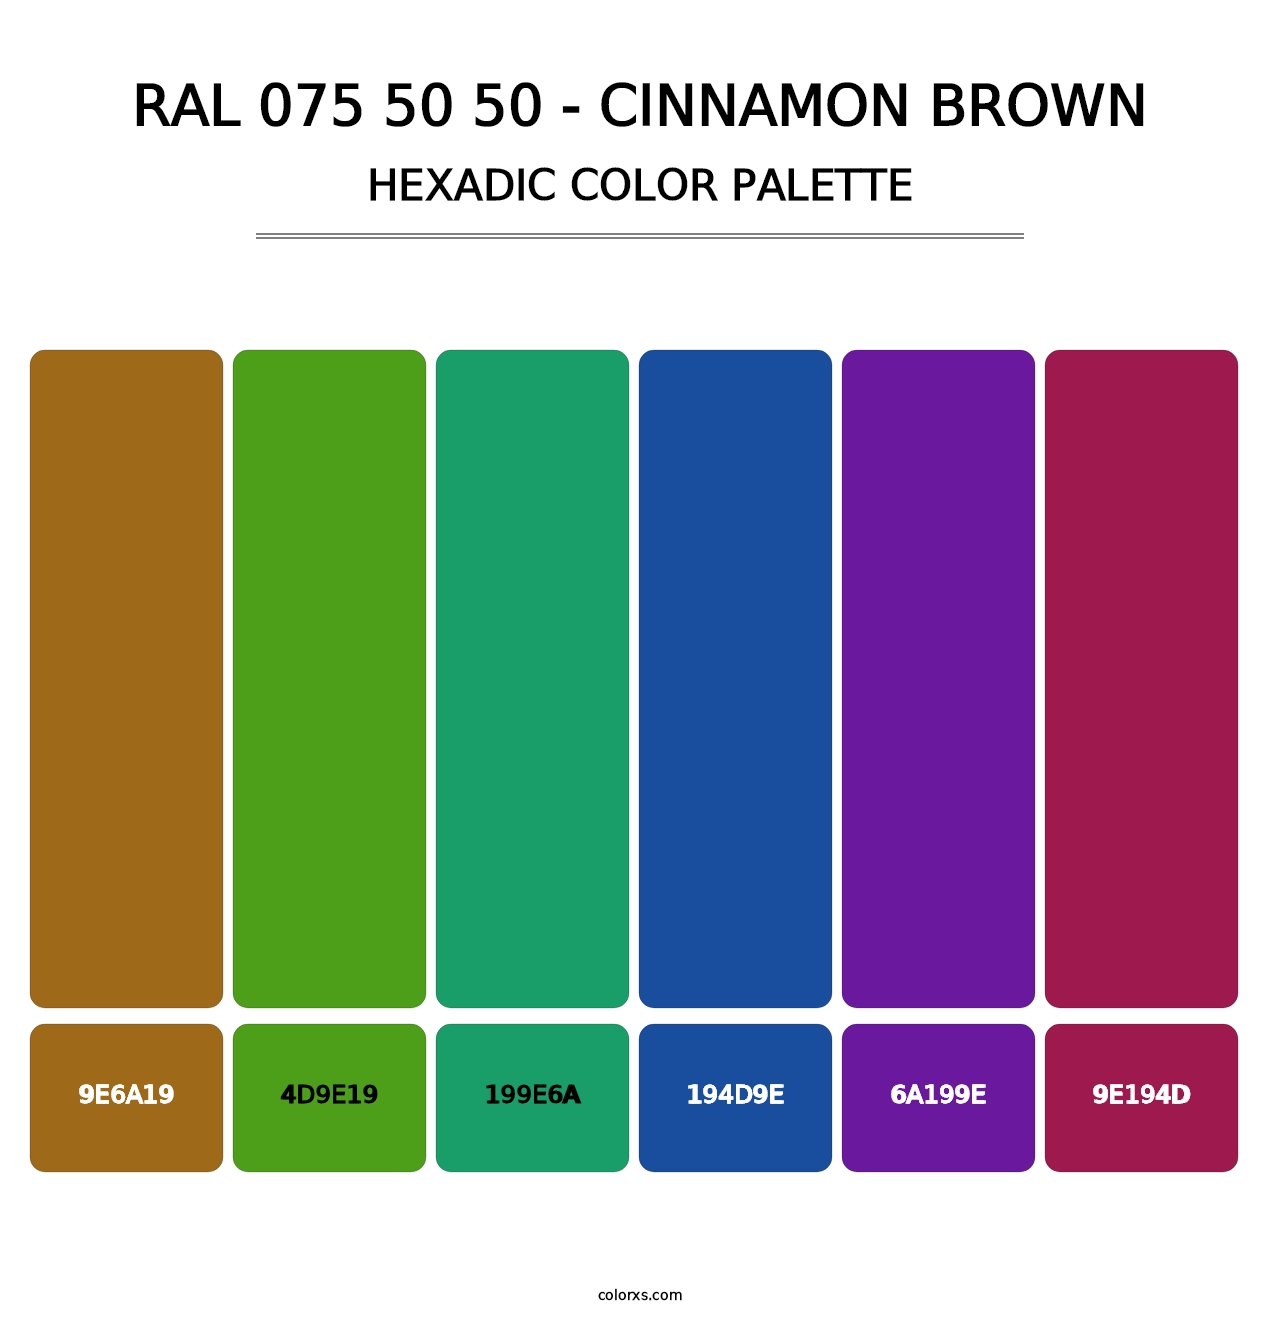 RAL 075 50 50 - Cinnamon Brown - Hexadic Color Palette